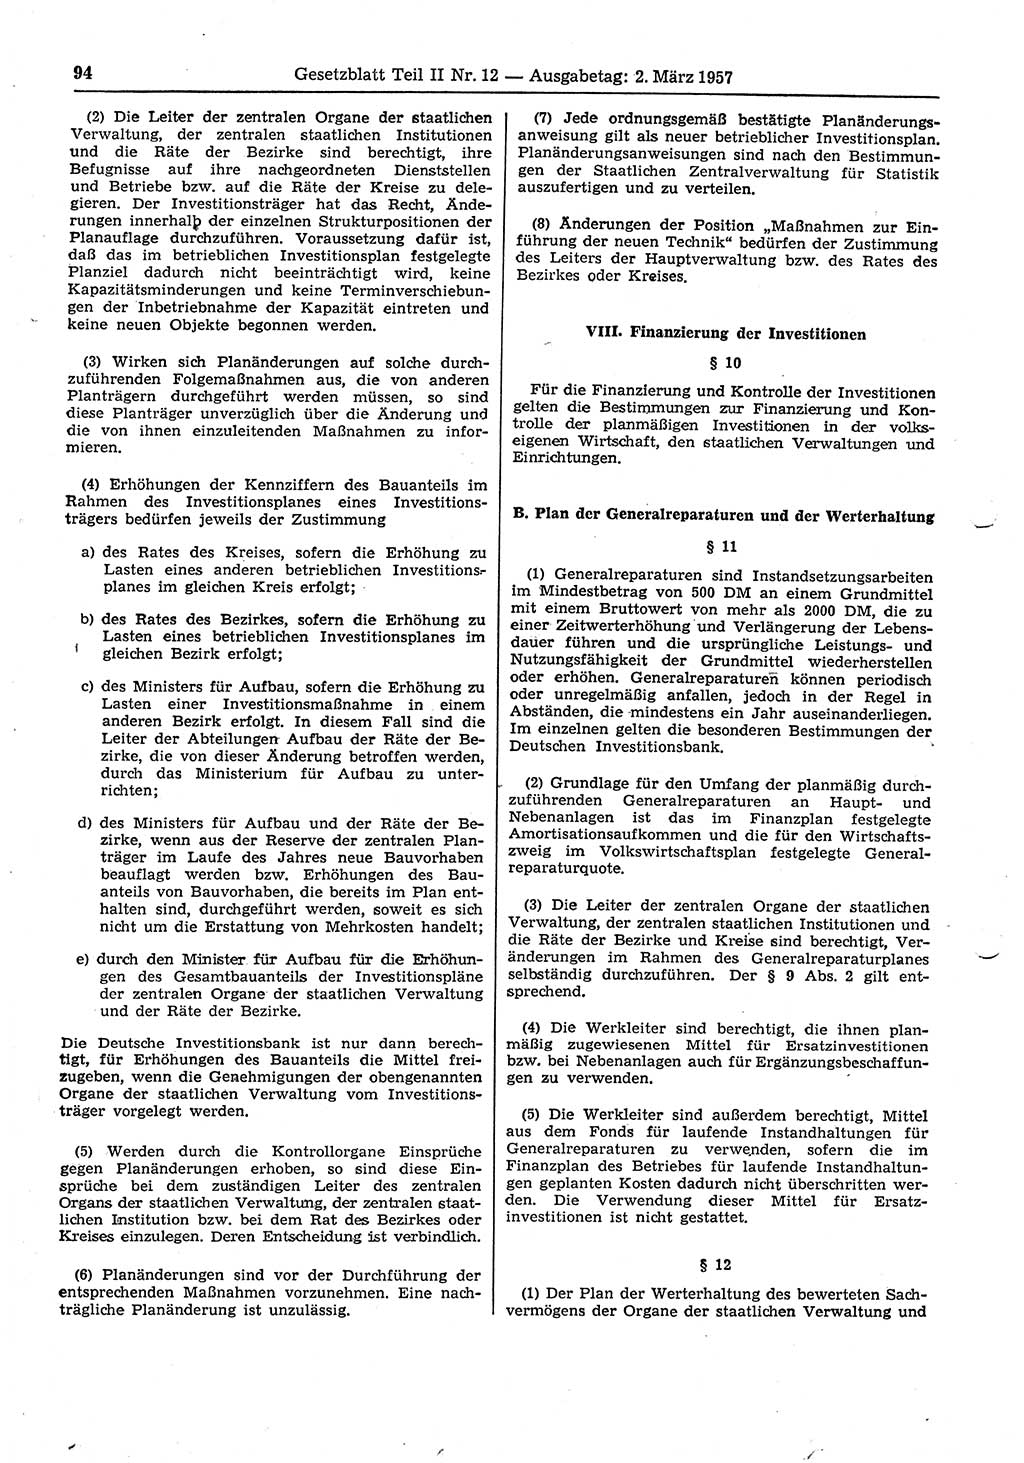 Gesetzblatt (GBl.) der Deutschen Demokratischen Republik (DDR) Teil ⅠⅠ 1957, Seite 94 (GBl. DDR ⅠⅠ 1957, S. 94)